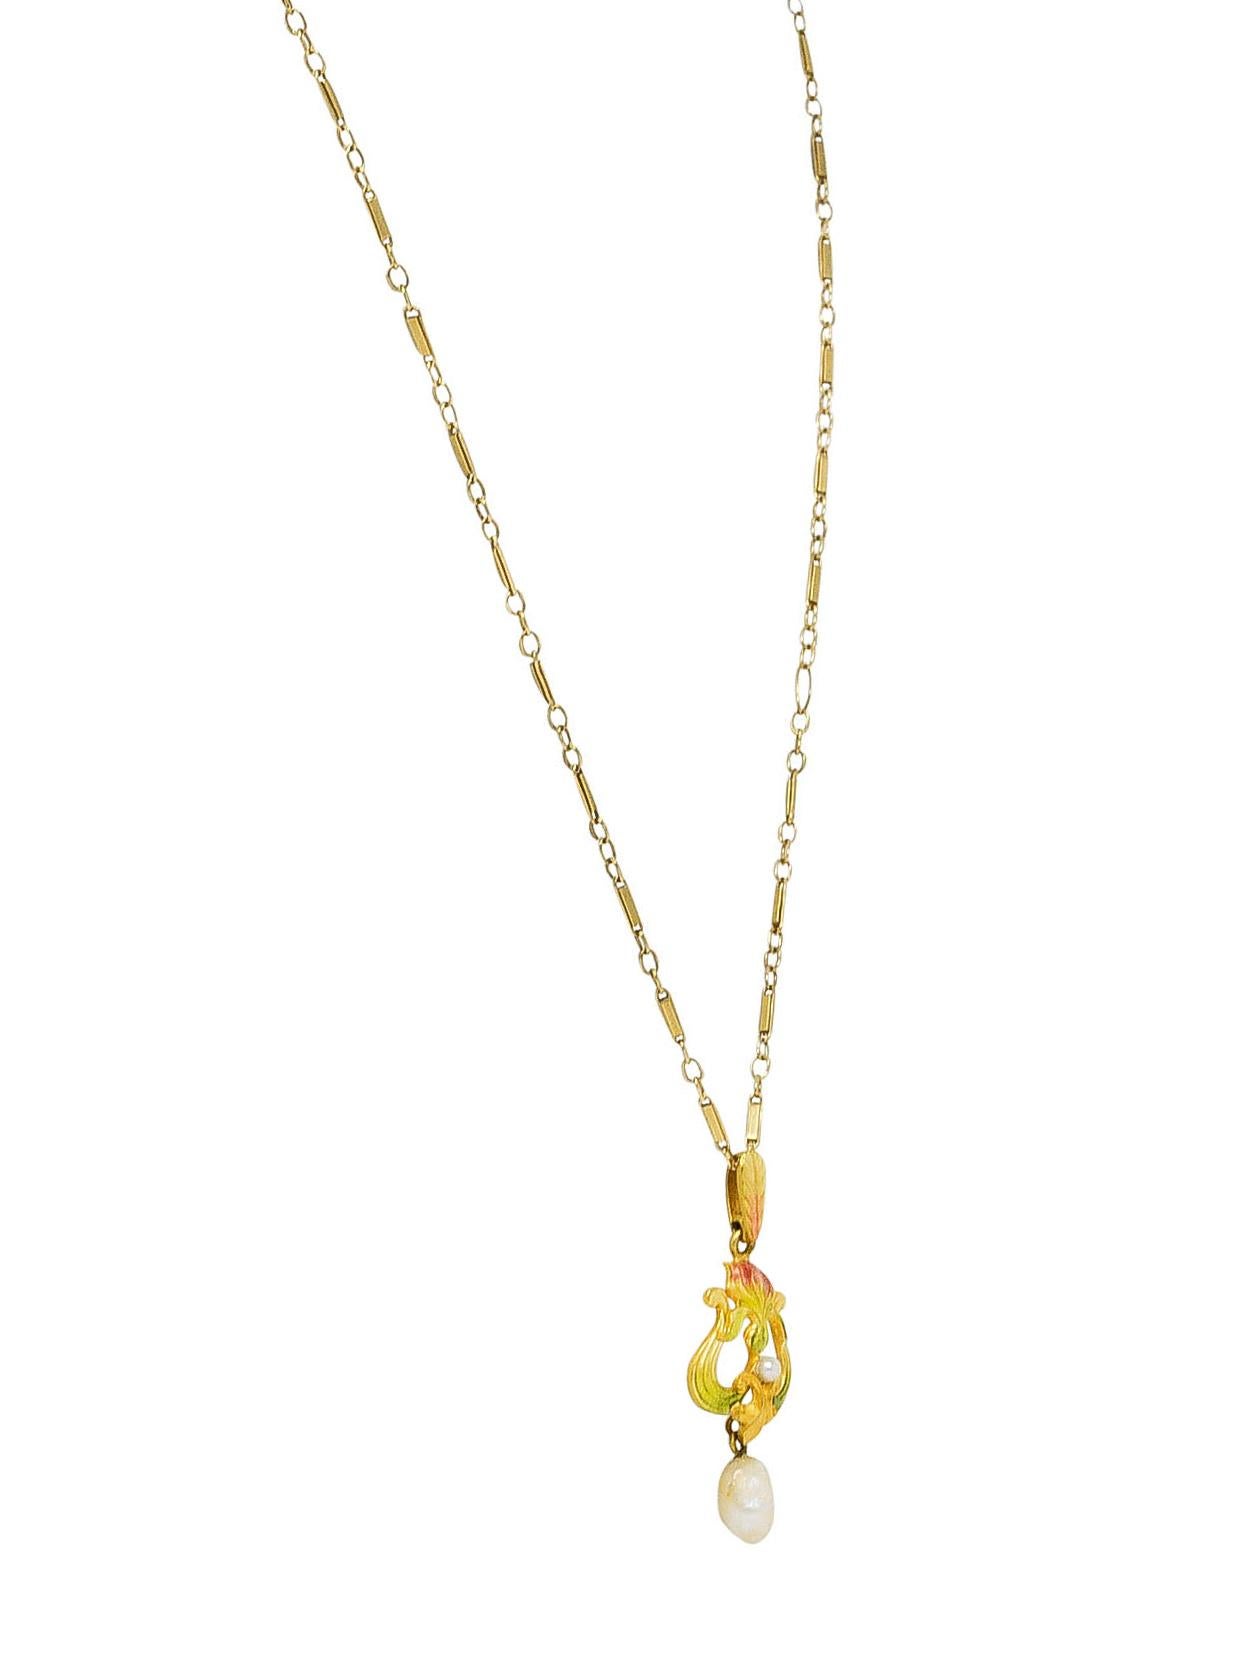 Uncut Art Nouveau Enamel Pearl 14 Karat Gold Pendant Necklace